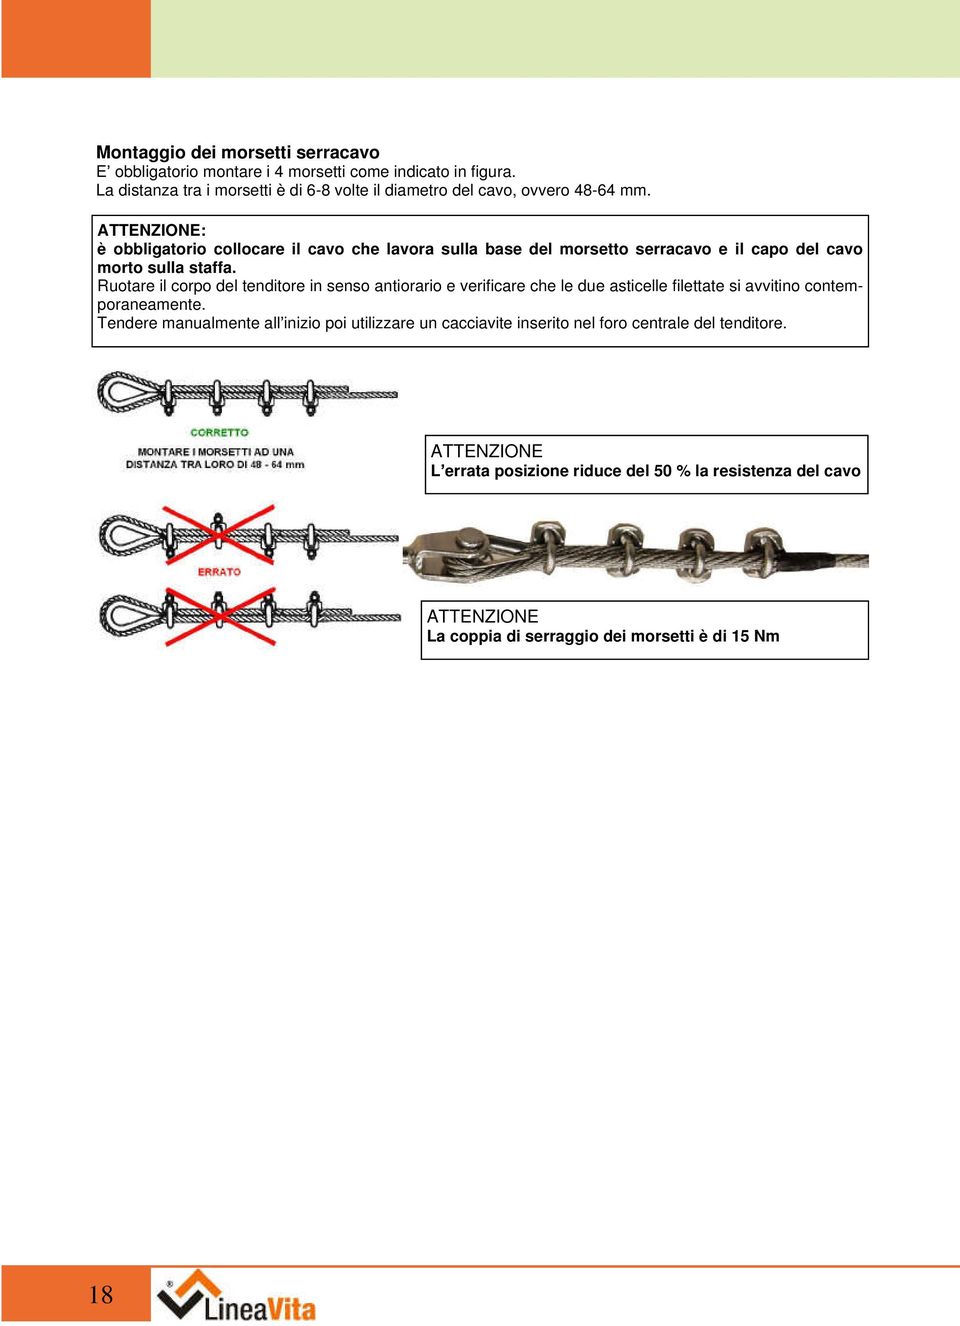 ATTENZIONE: è obbligatorio collocare il cavo che lavora sulla base del morsetto serracavo e il capo del cavo morto sulla staffa.